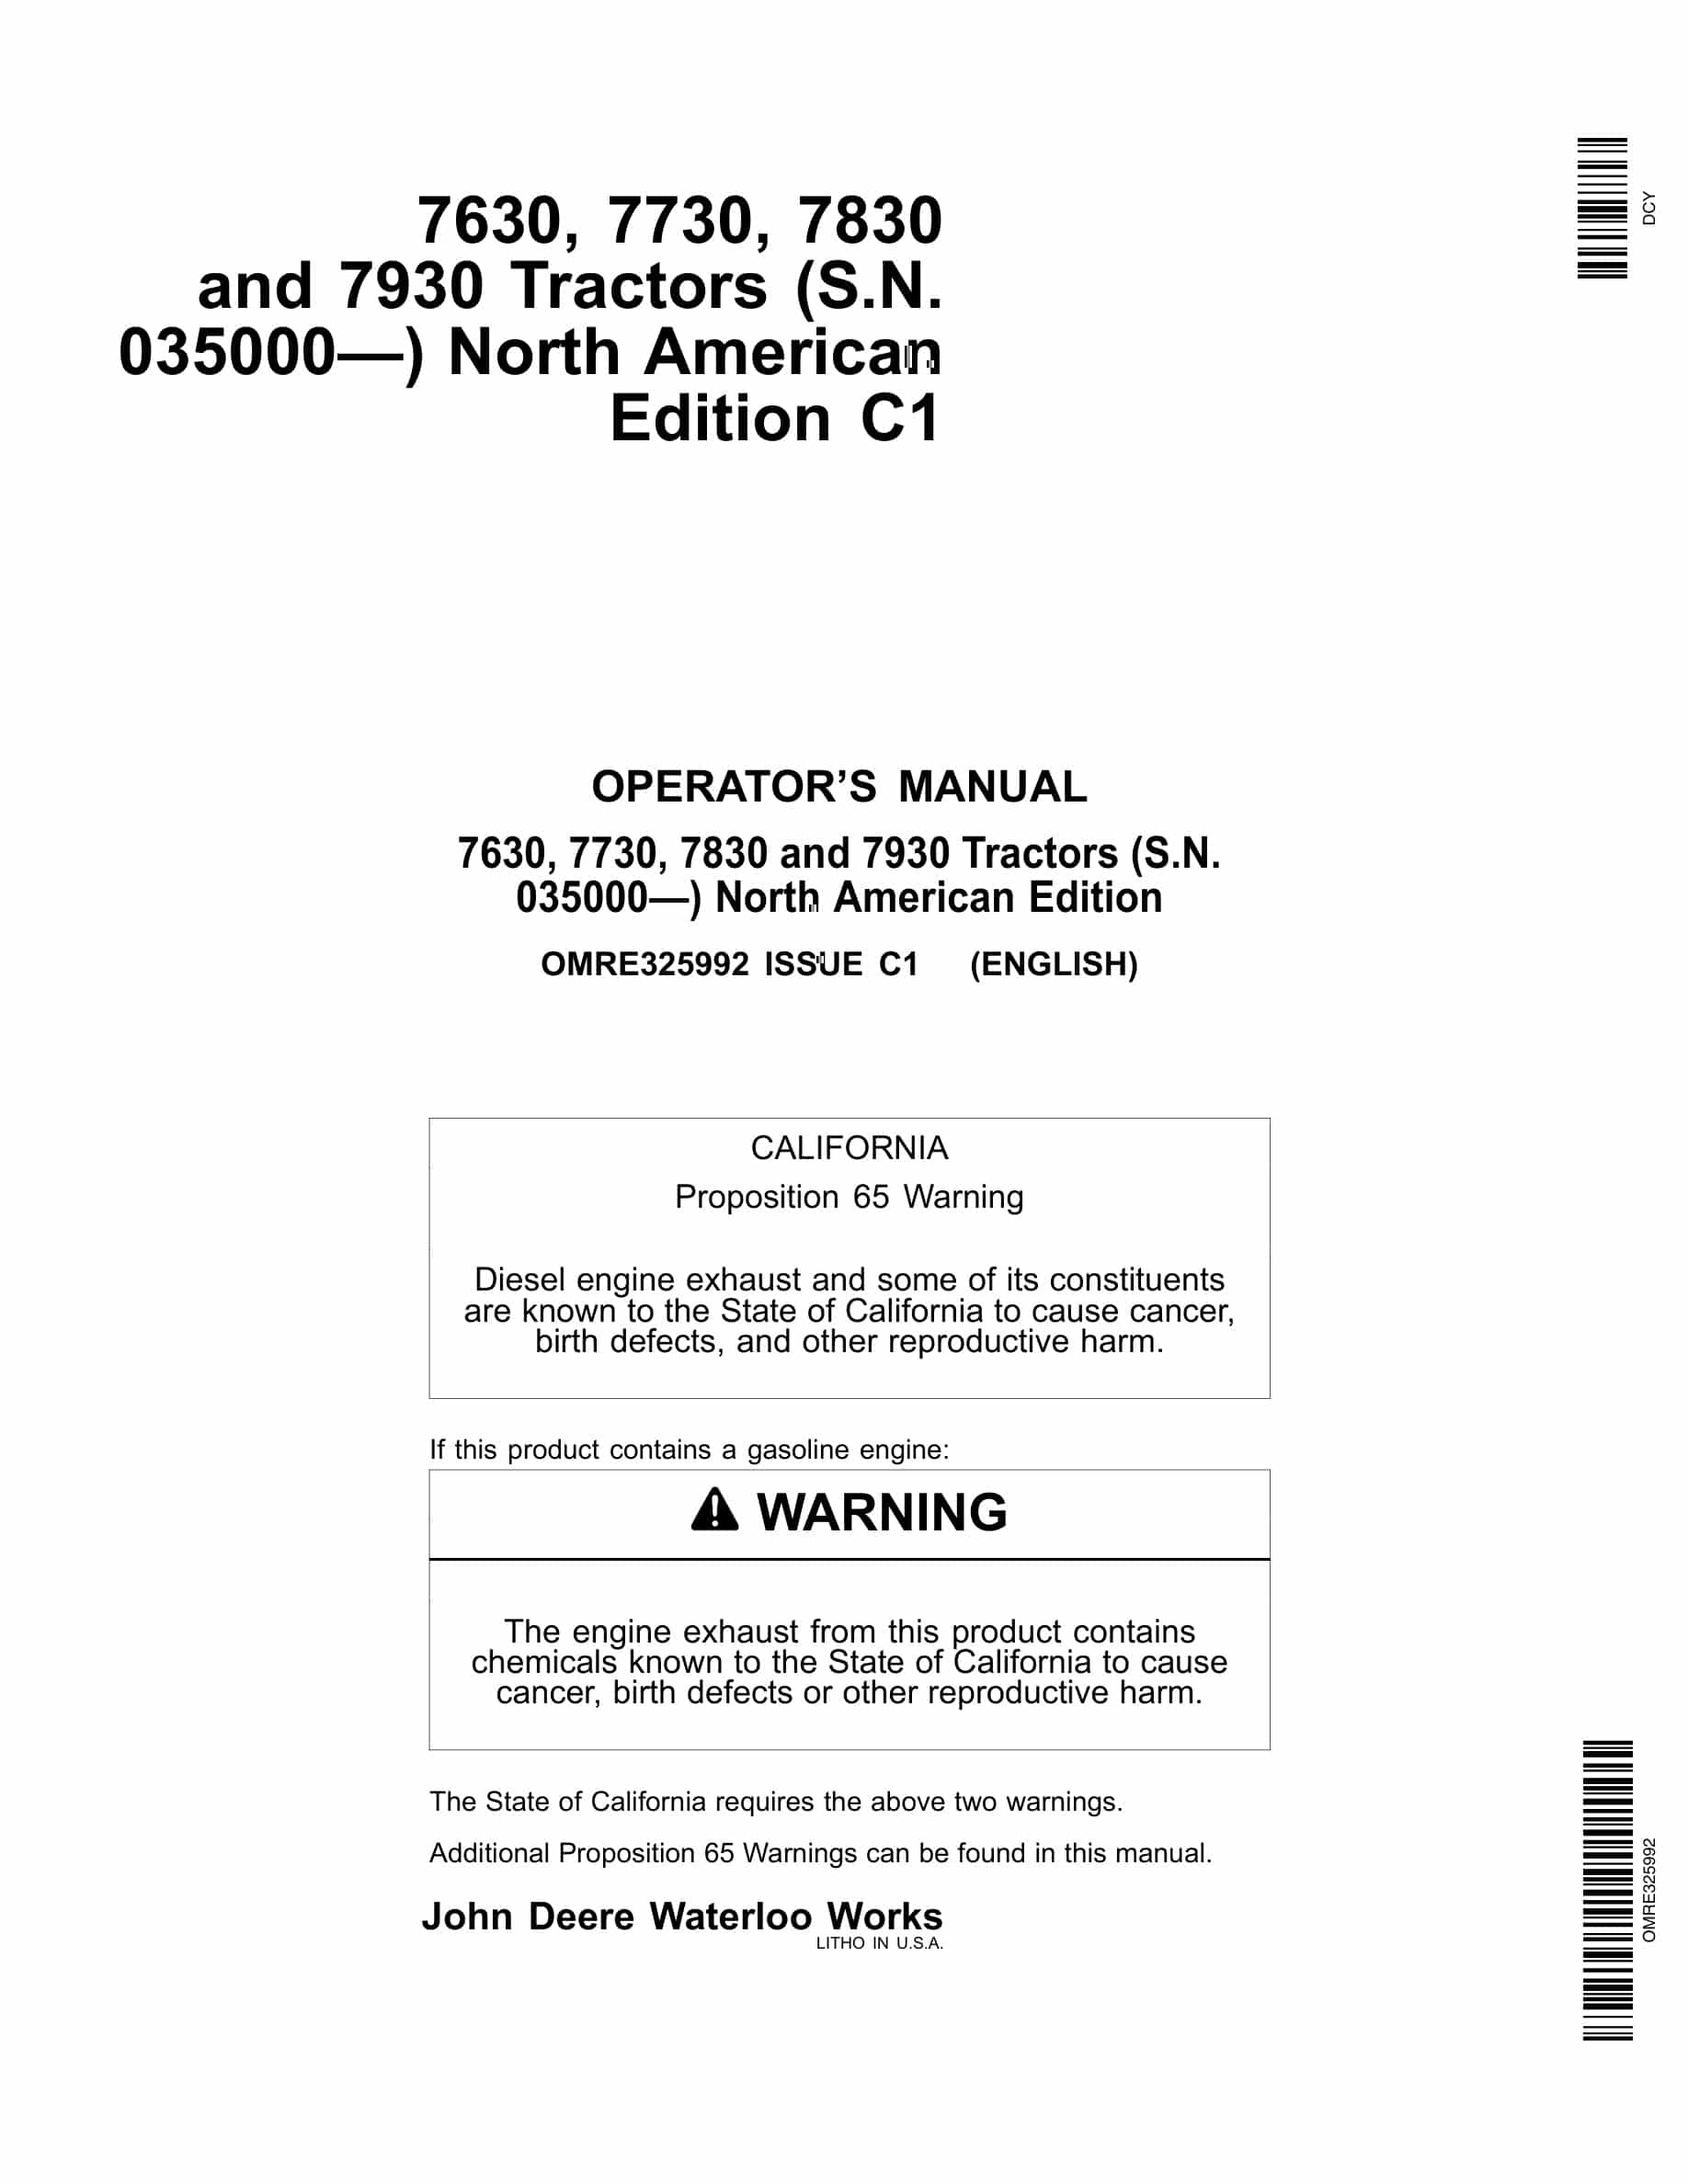 John Deere 7630, 7730, 7830 and 7930 Tractor Operator Manual OMRE325992-1